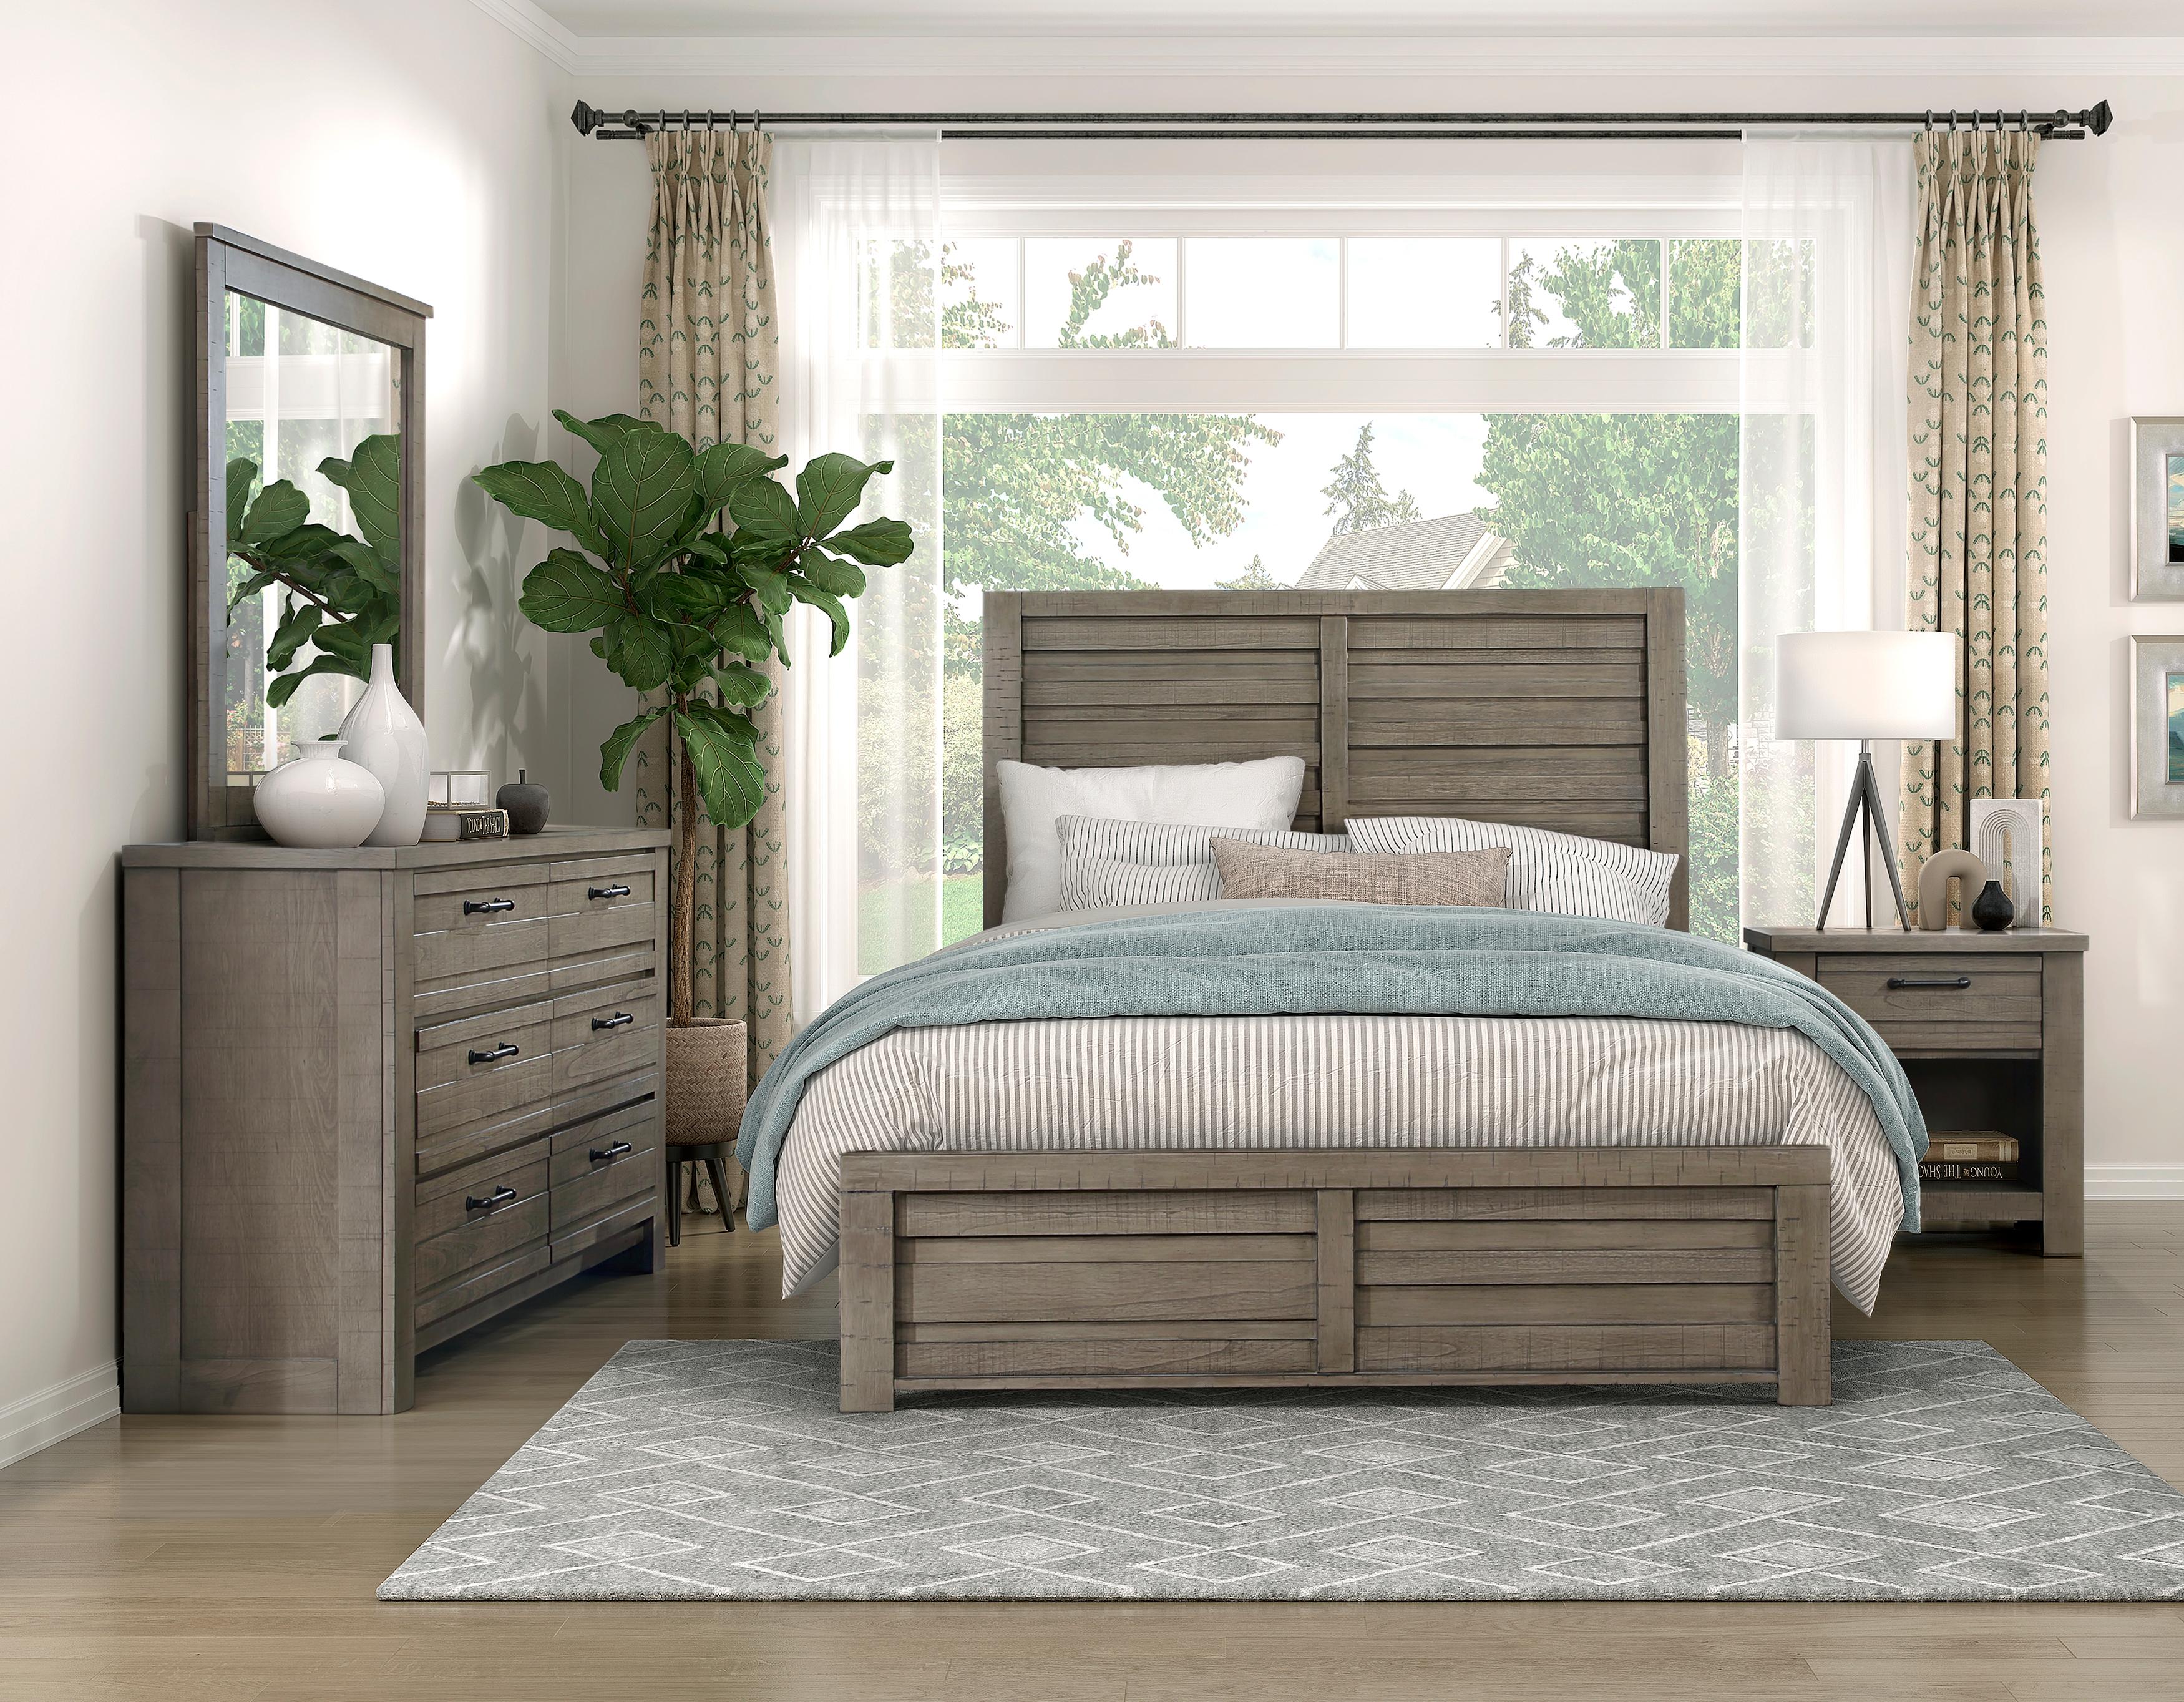 

    
Rustic Gray Wood Queen Panel Bedroom Set 5PCS Homelegance Longview 1498GY-1-Q-5PCS
